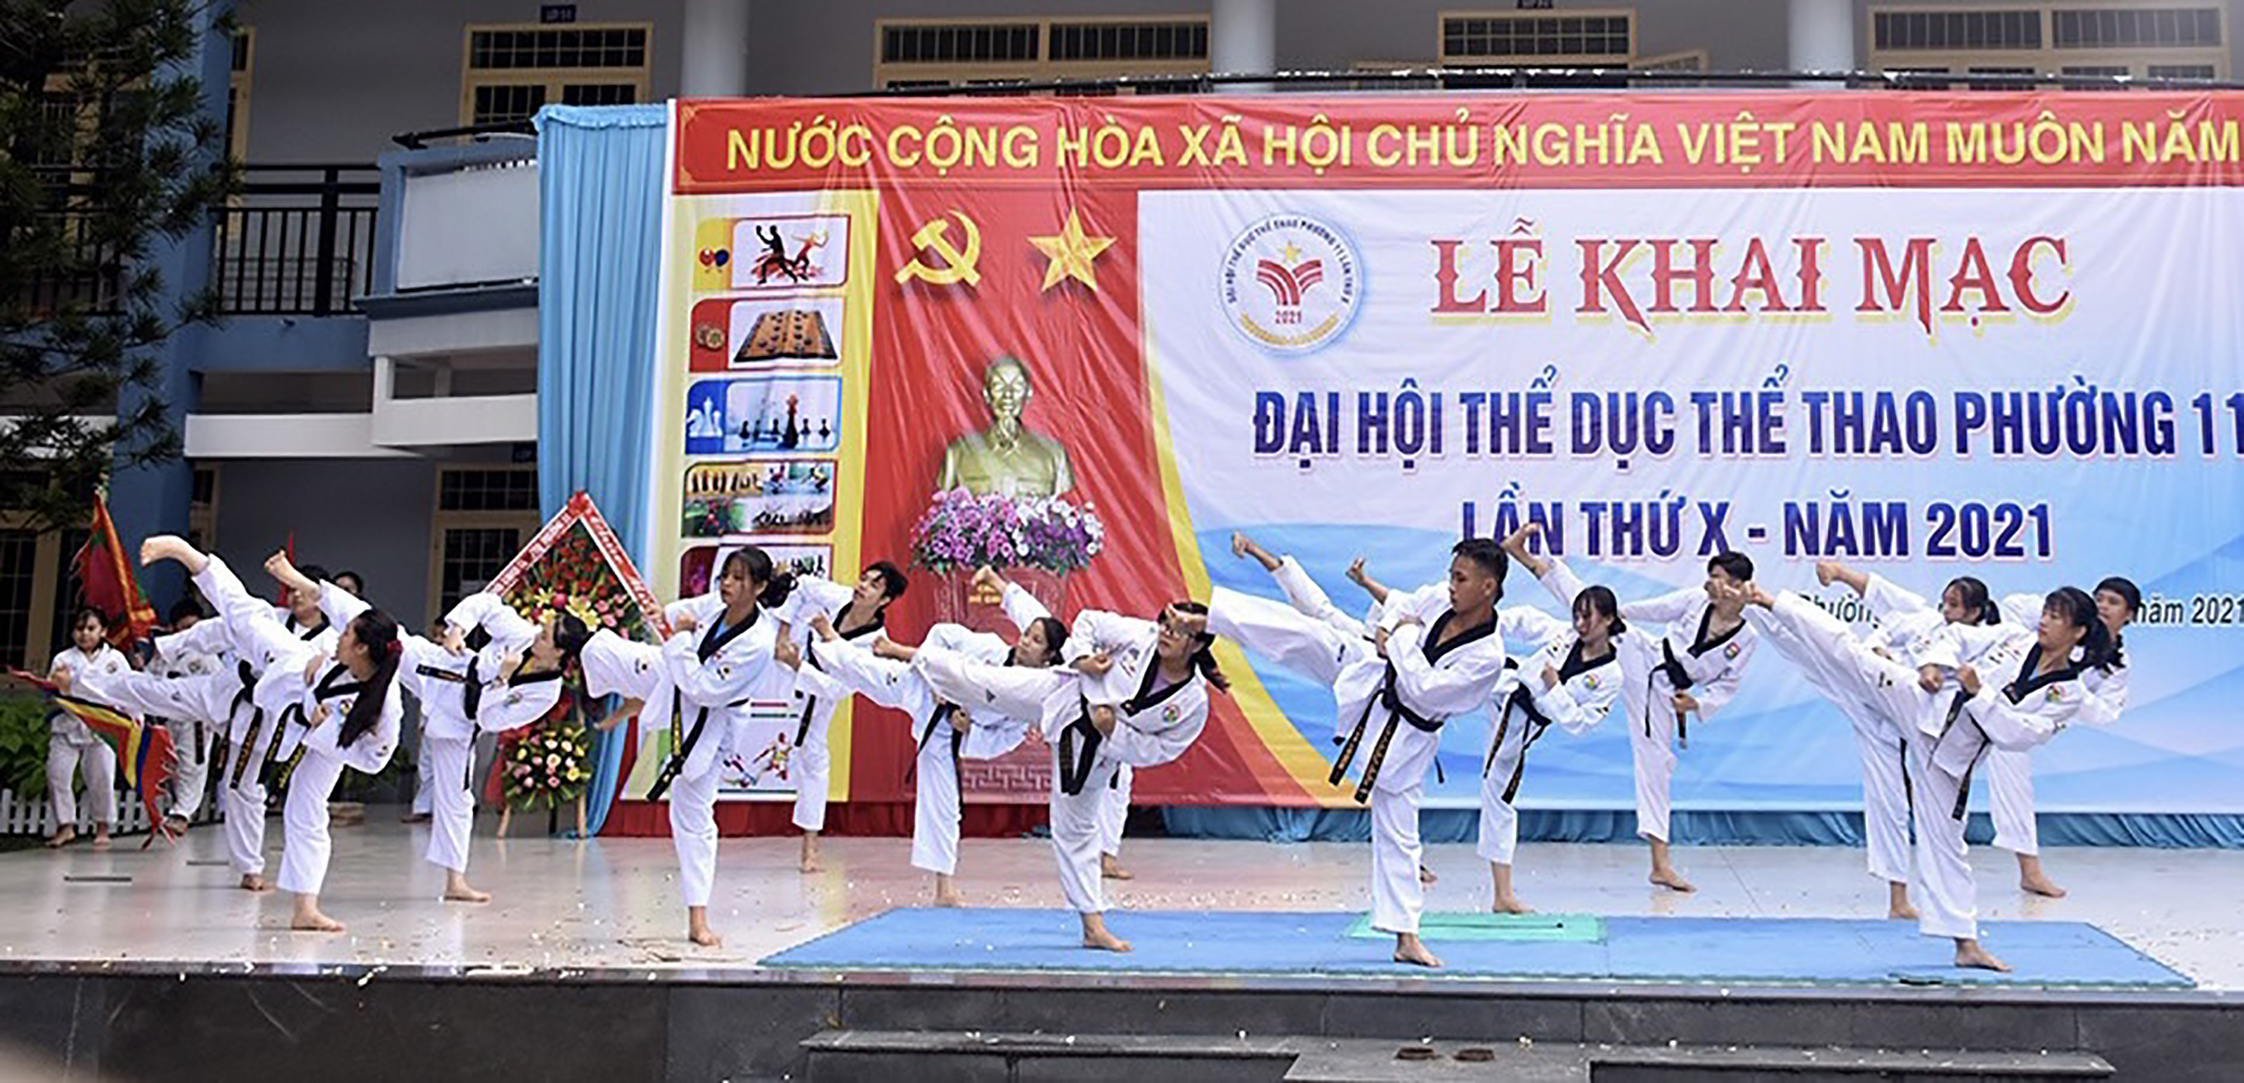 Giải đấu nhằm tạo điều kiện để các VĐV được thi đấu, giao lưu, học tập và duy trì phát triển môn Taekwondo trên địa bàn tỉnh.